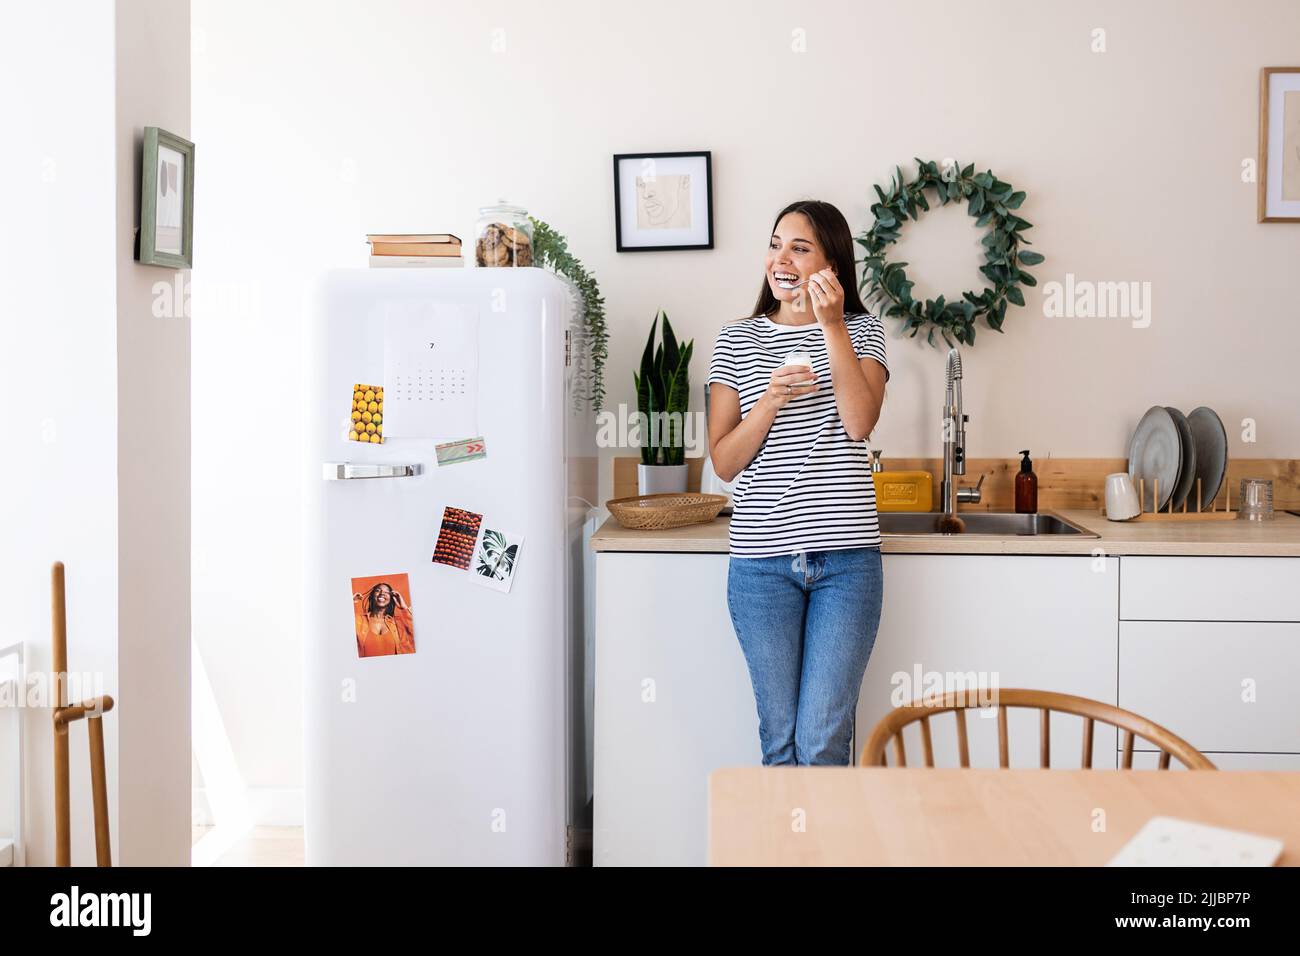 Hübsche junge Frau, die natürlichen Joghurt isst, während sie zu Hause in der Küche steht Stockfoto